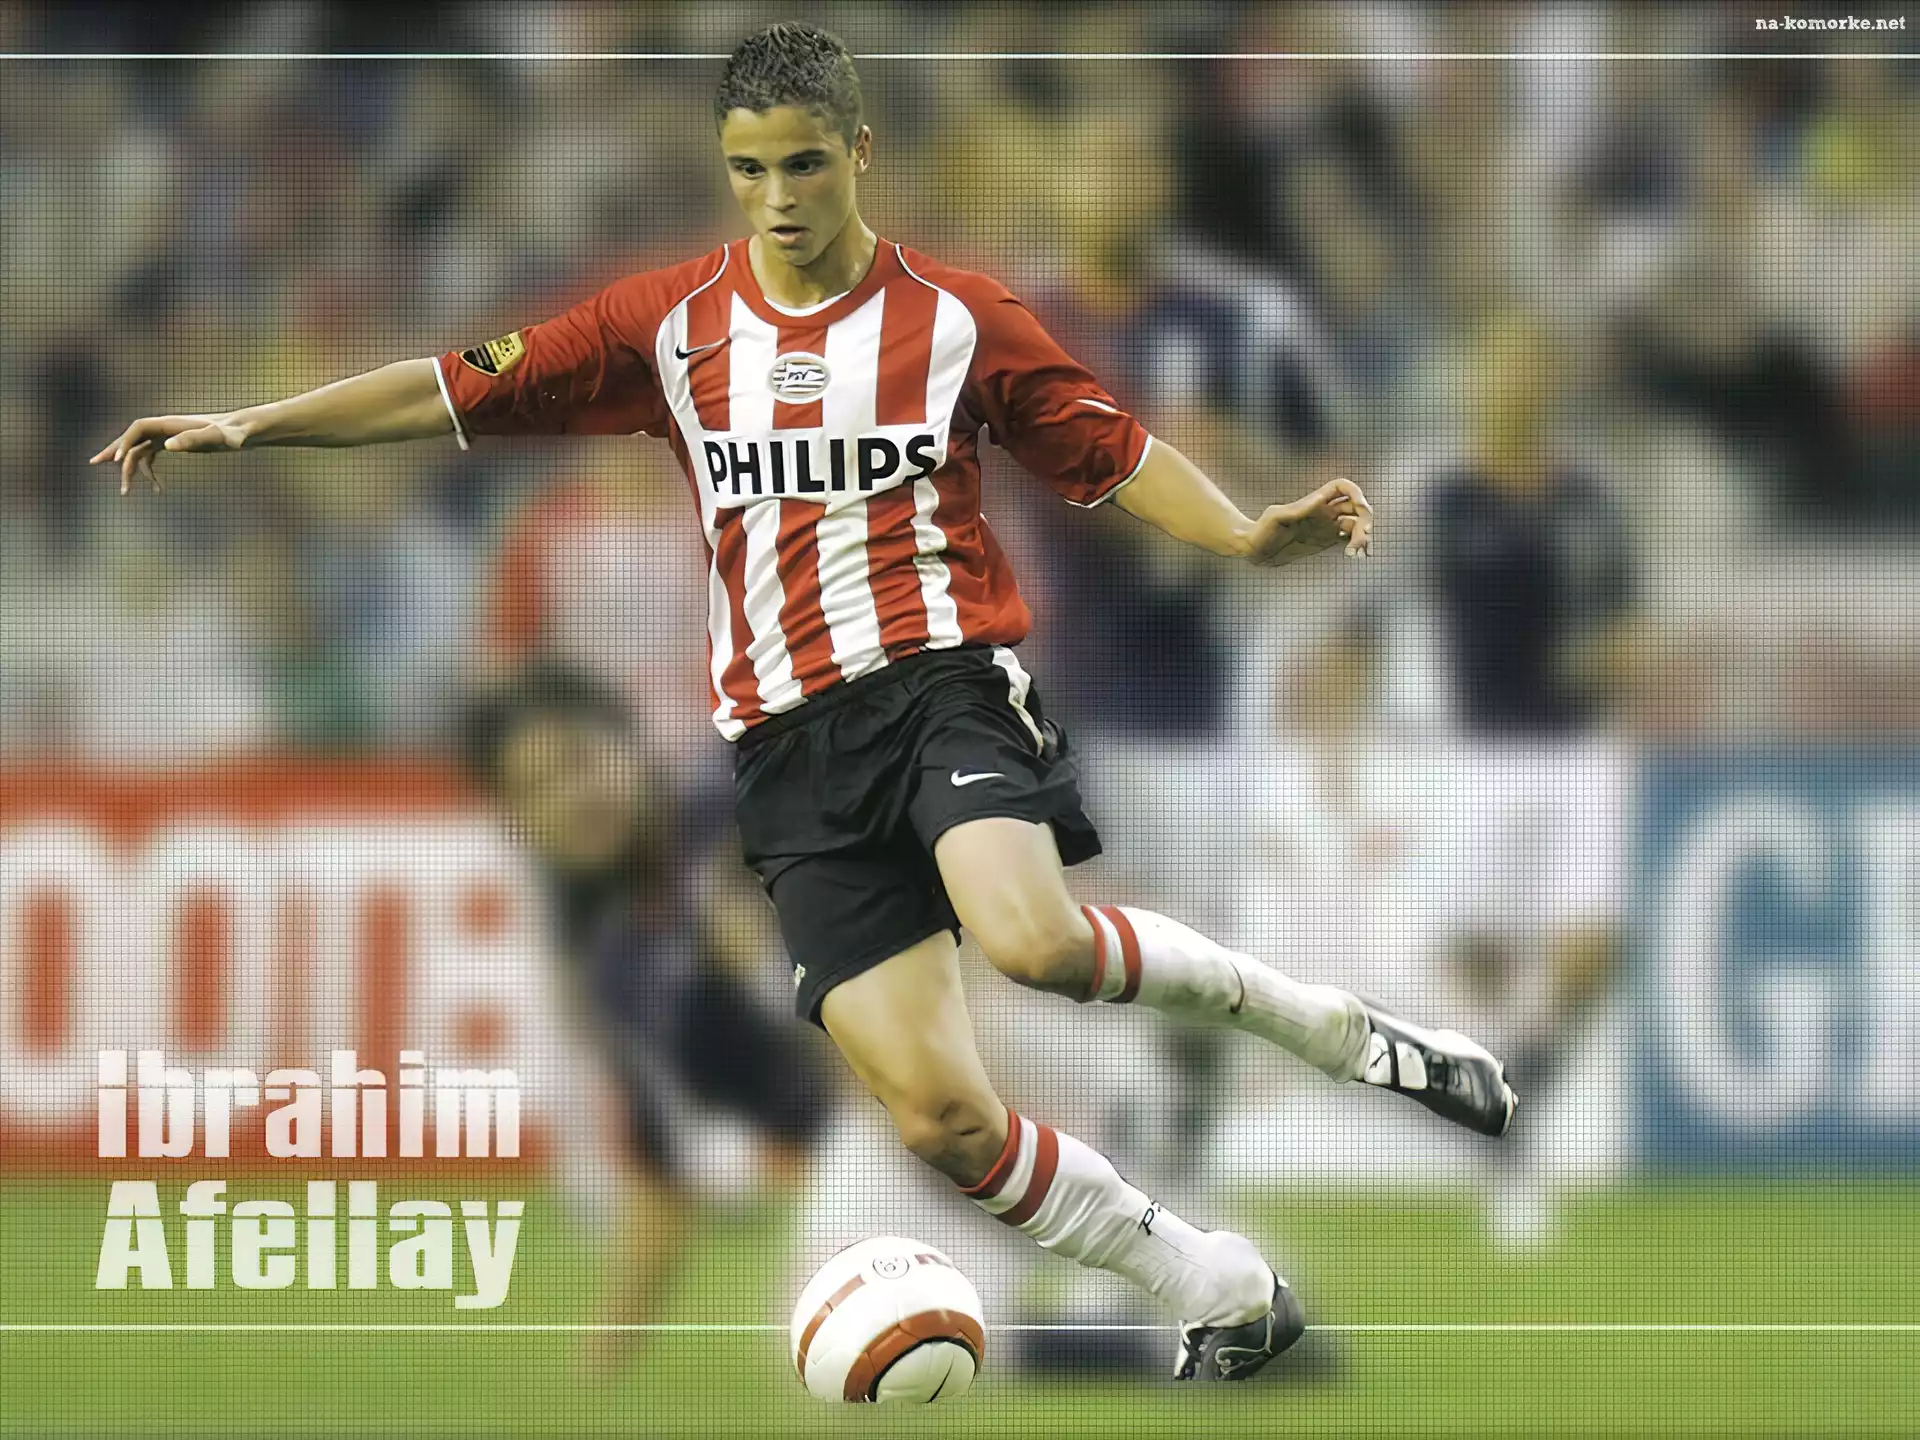 Piłka nożna, Ibrahim Afellay